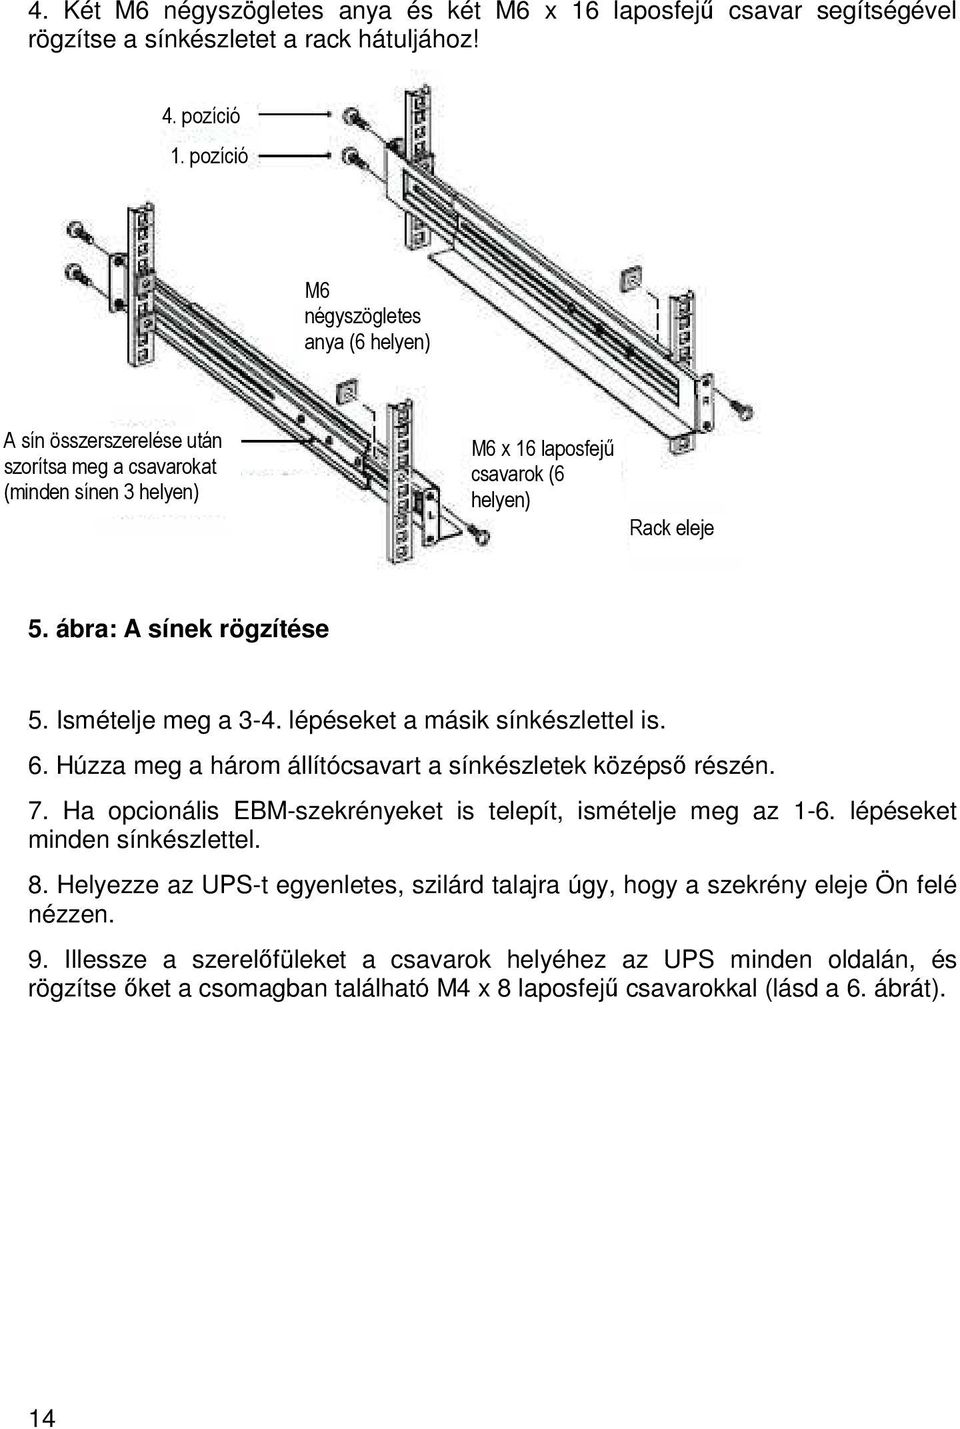 Ismételje meg a 3-4. lépéseket a másik sínkészlettel is. 6. Húzza meg a három állítócsavart a sínkészletek középsı részén. 7. Ha opcionális EBM-szekrényeket is telepít, ismételje meg az 1-6.